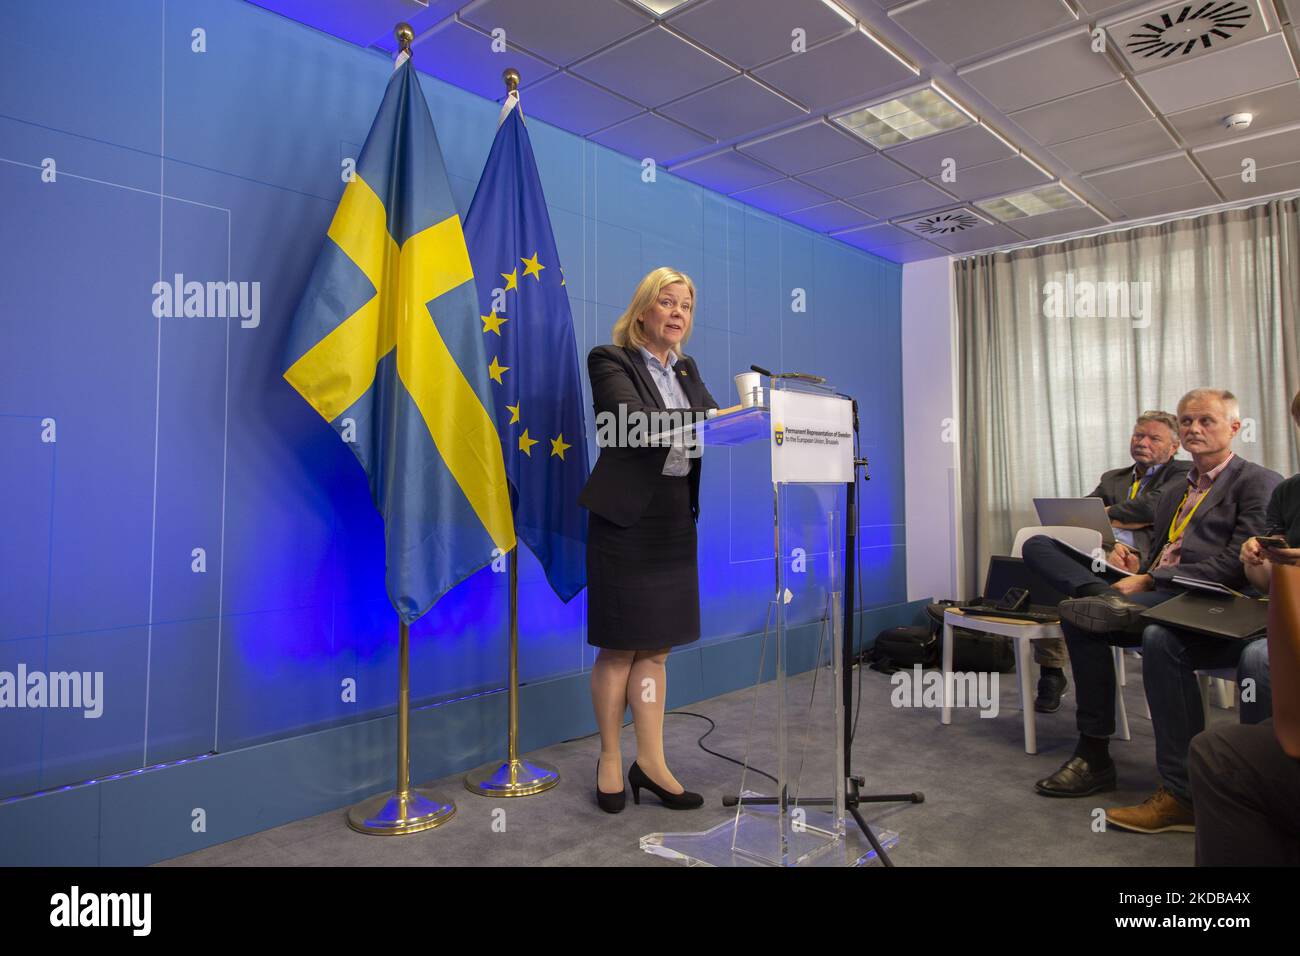 Magdalena Andersson, primo ministro svedese, ha parlato in una conferenza stampa con i media dopo la fine del vertice straordinario di 2 giorni dell'UE sull'Ucraina, l'energia e la difesa, concordando su una sesta ondata di sanzioni contro la Russia e le esportazioni di petrolio russo con speciali esenzioni per gli oleodotti in Ungheria. Il governo svedese ha formalmente chiesto di aderire all'alleanza militare della NATO dopo il conflitto russo-ucraino. Riunione dei 27 leader dell'UE al Consiglio europeo di Bruxelles (Belgio) il 31 maggio 2022 (Foto di Nicolas Economou/NurPhoto) Foto Stock